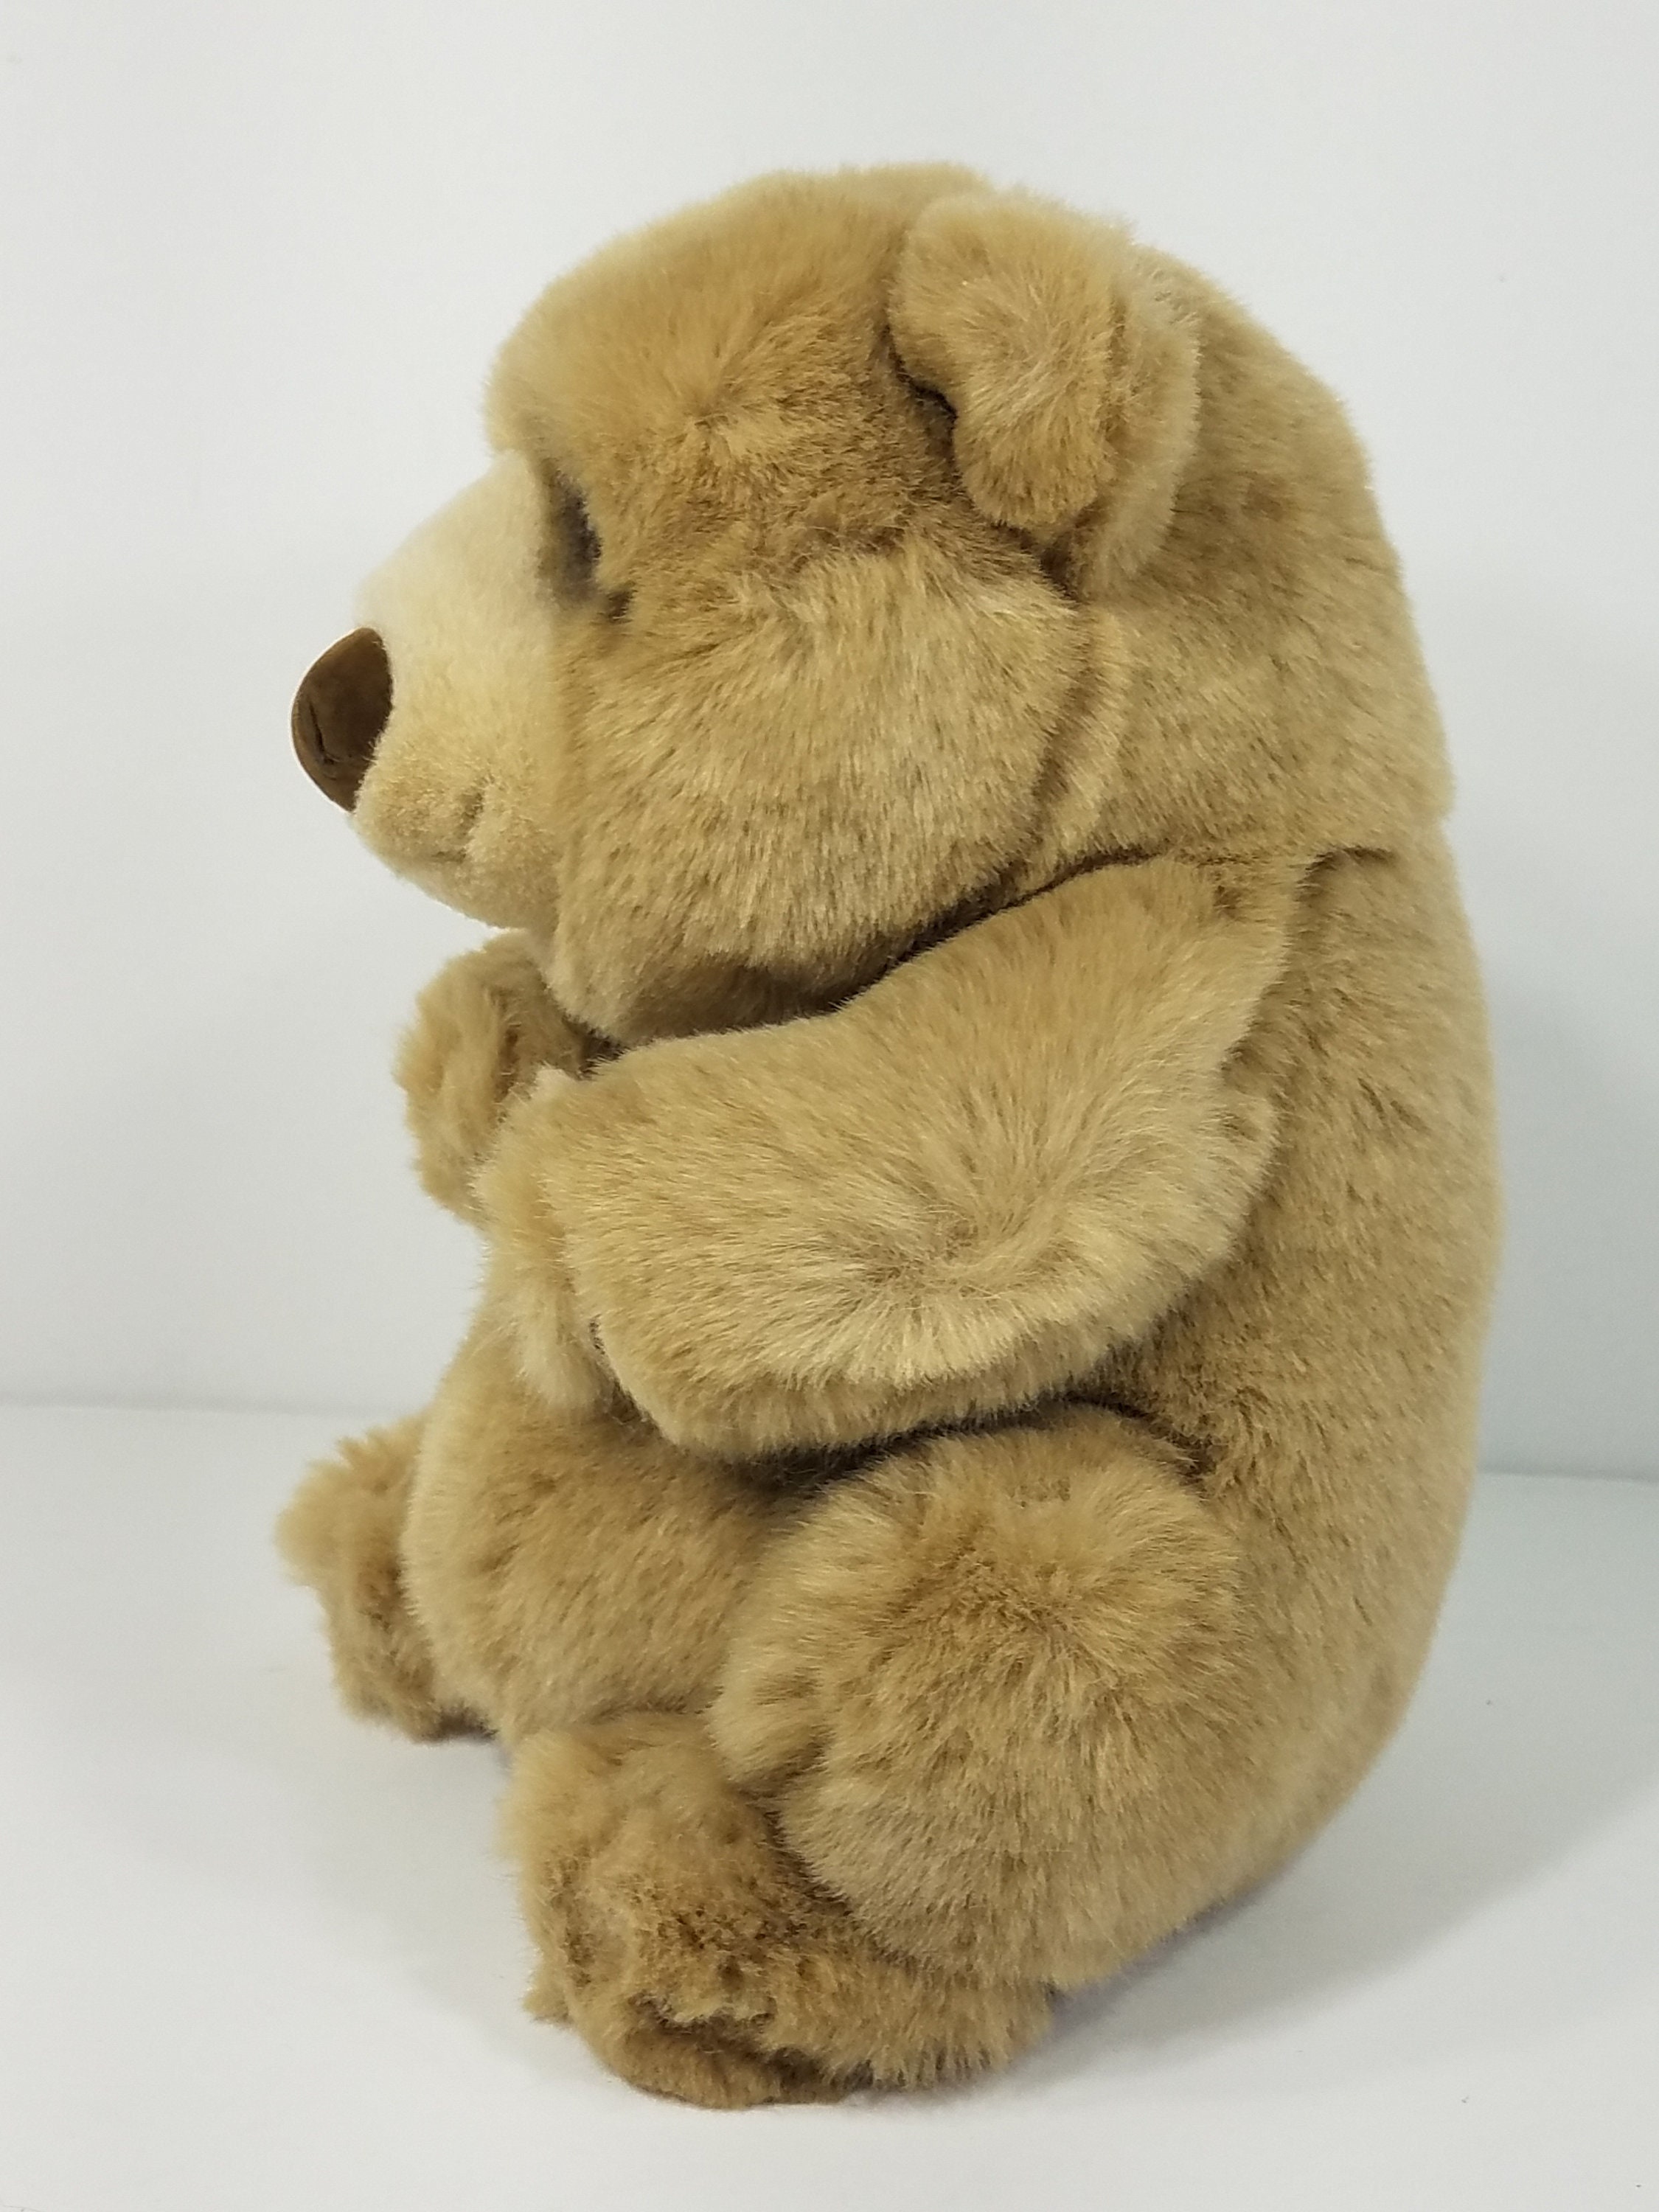 Applause Dakin Lou Rankin tan brown Jasper bear 8 inch stuffed | Etsy